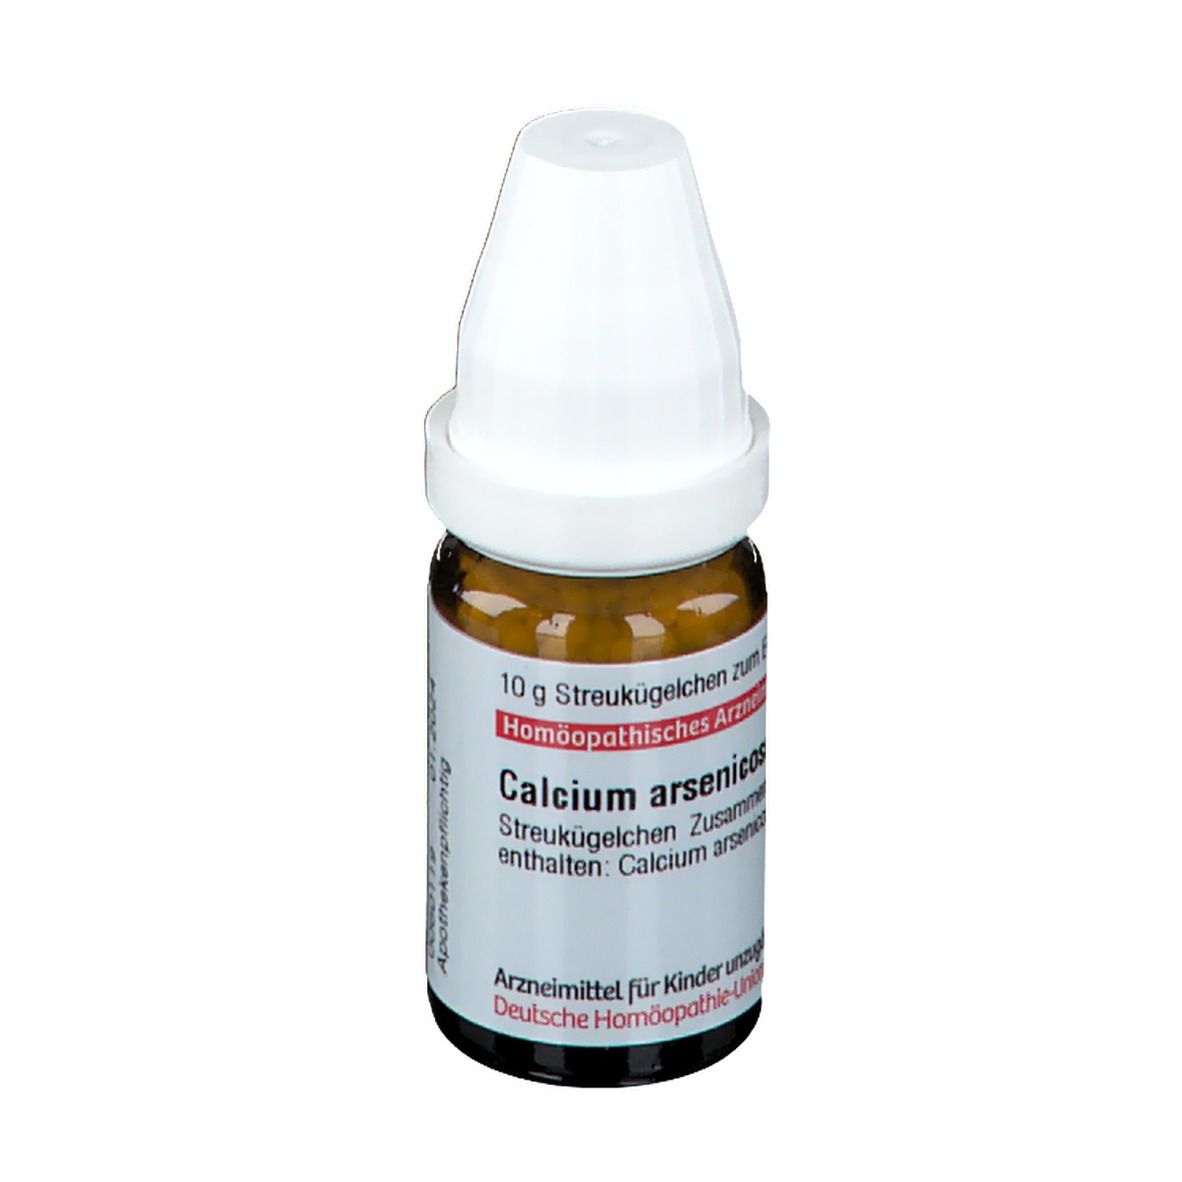 DHU Calcium Arsenicosum C30